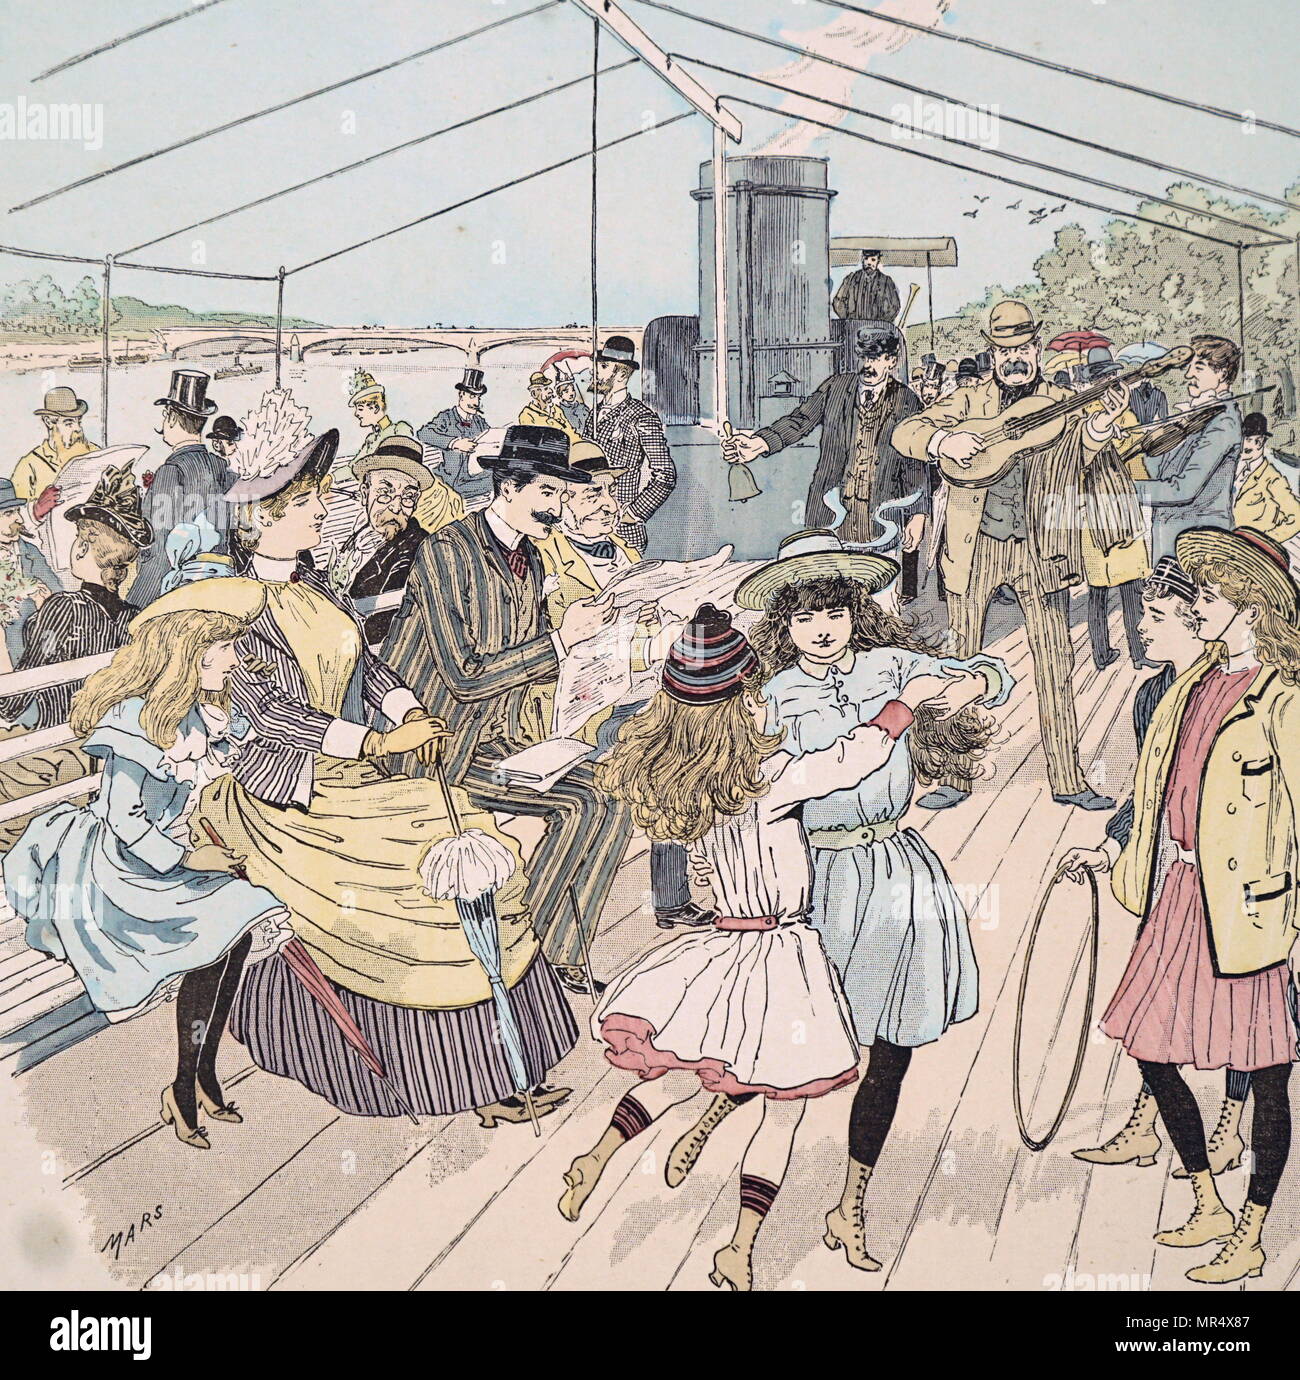 Illustration couleur illustrant les Londoniens bénéficiant voyage le long d'une rivière à Paris sur un bateau de plaisance à vapeur. Illustré par Mars (Maurice Bonvoisin) (1849-1912), un illustrateur français. En date du 19e siècle Banque D'Images